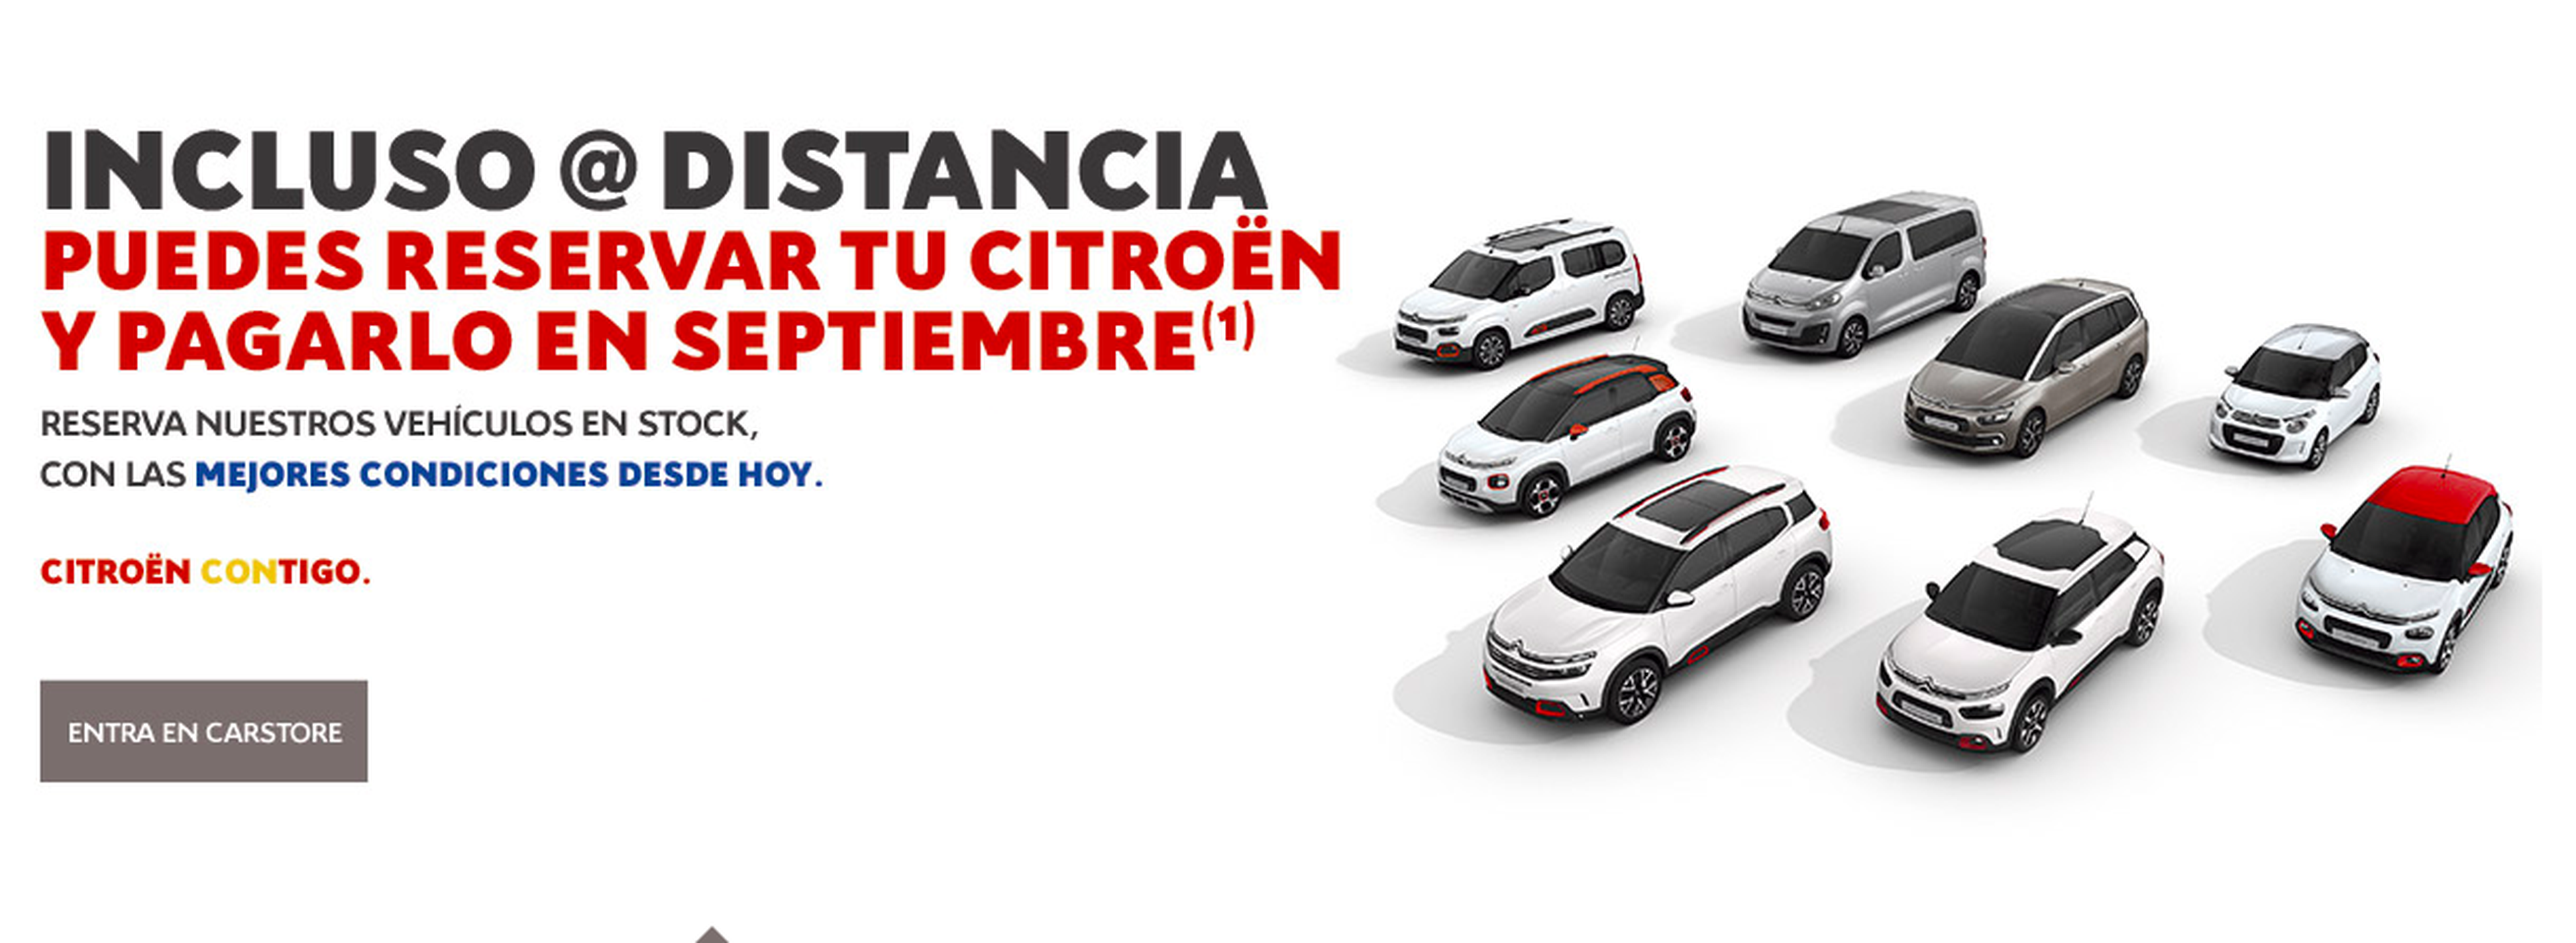 Oferta confinamiento Citroën